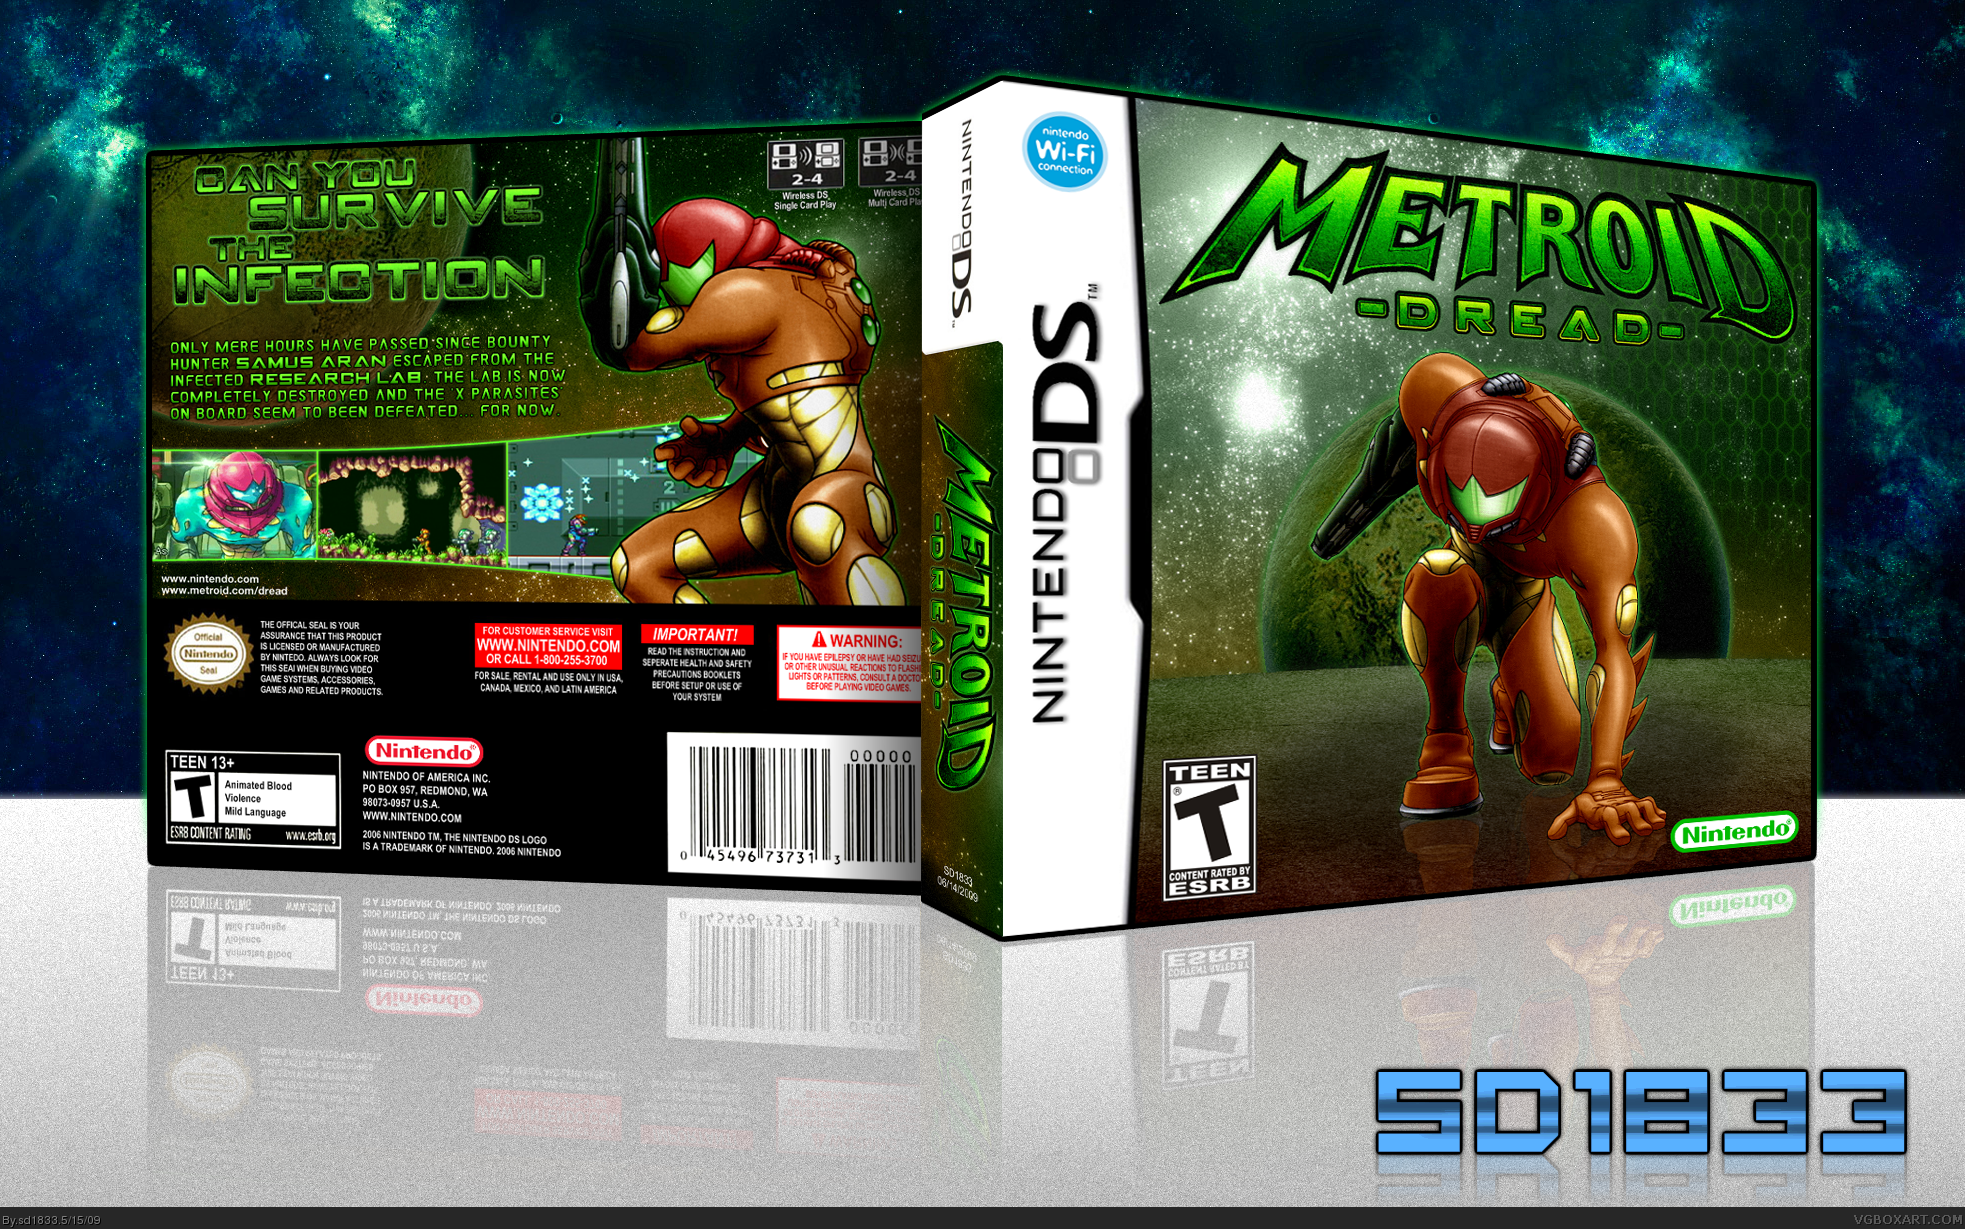 Metroid Dread box cover